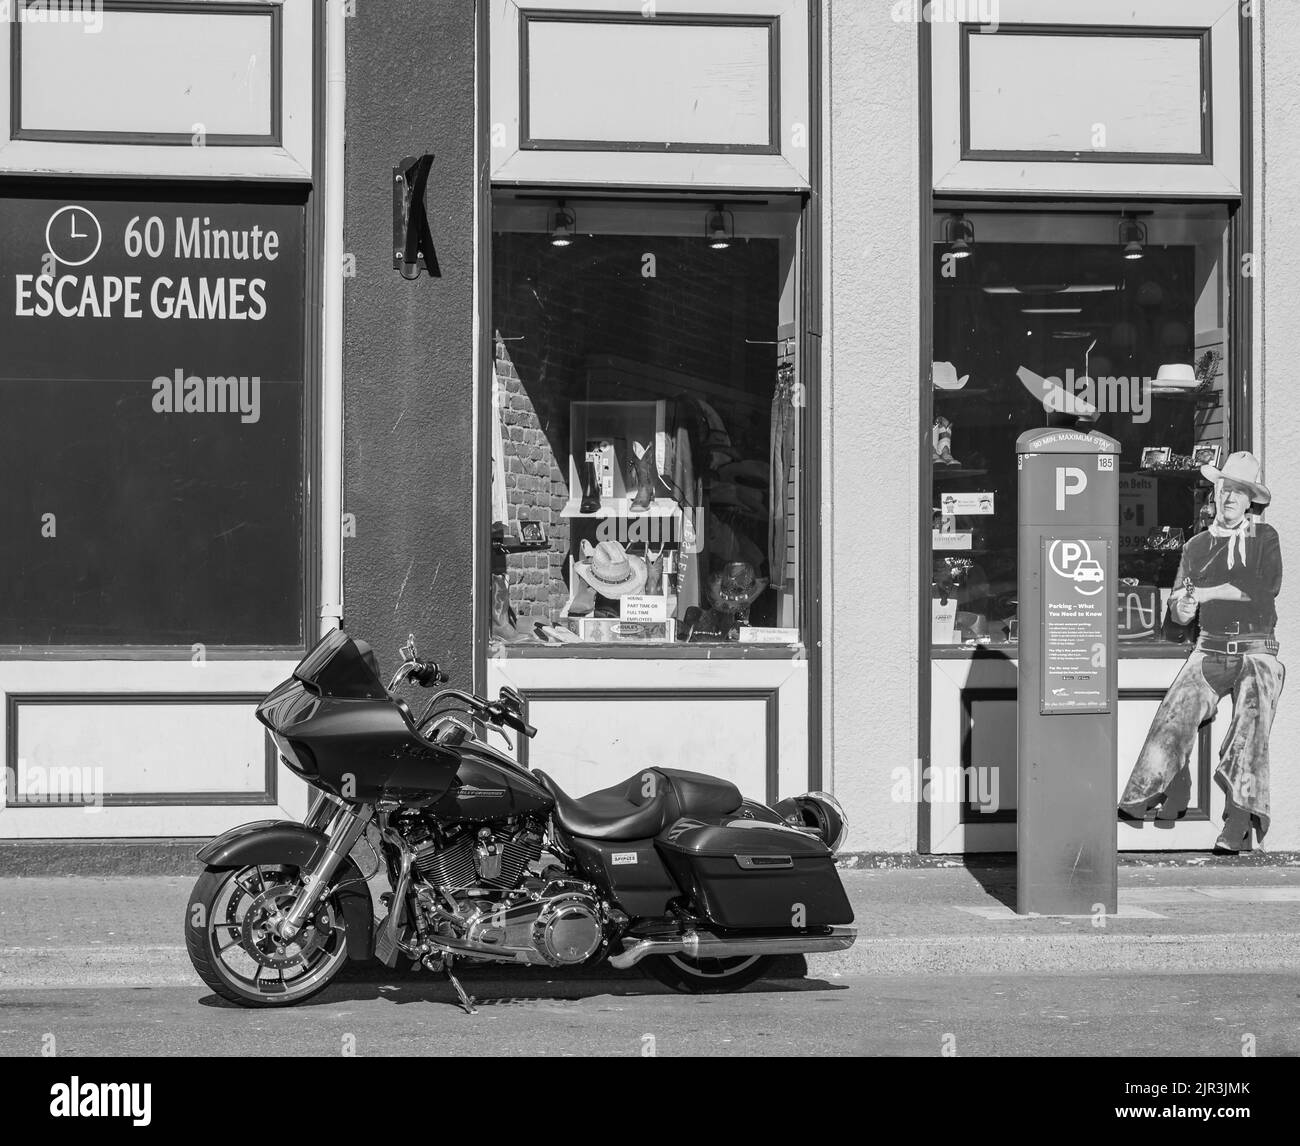 Harley Davidson moto sur la rue de la ville. Moto noire en noir et blanc photo Banque D'Images